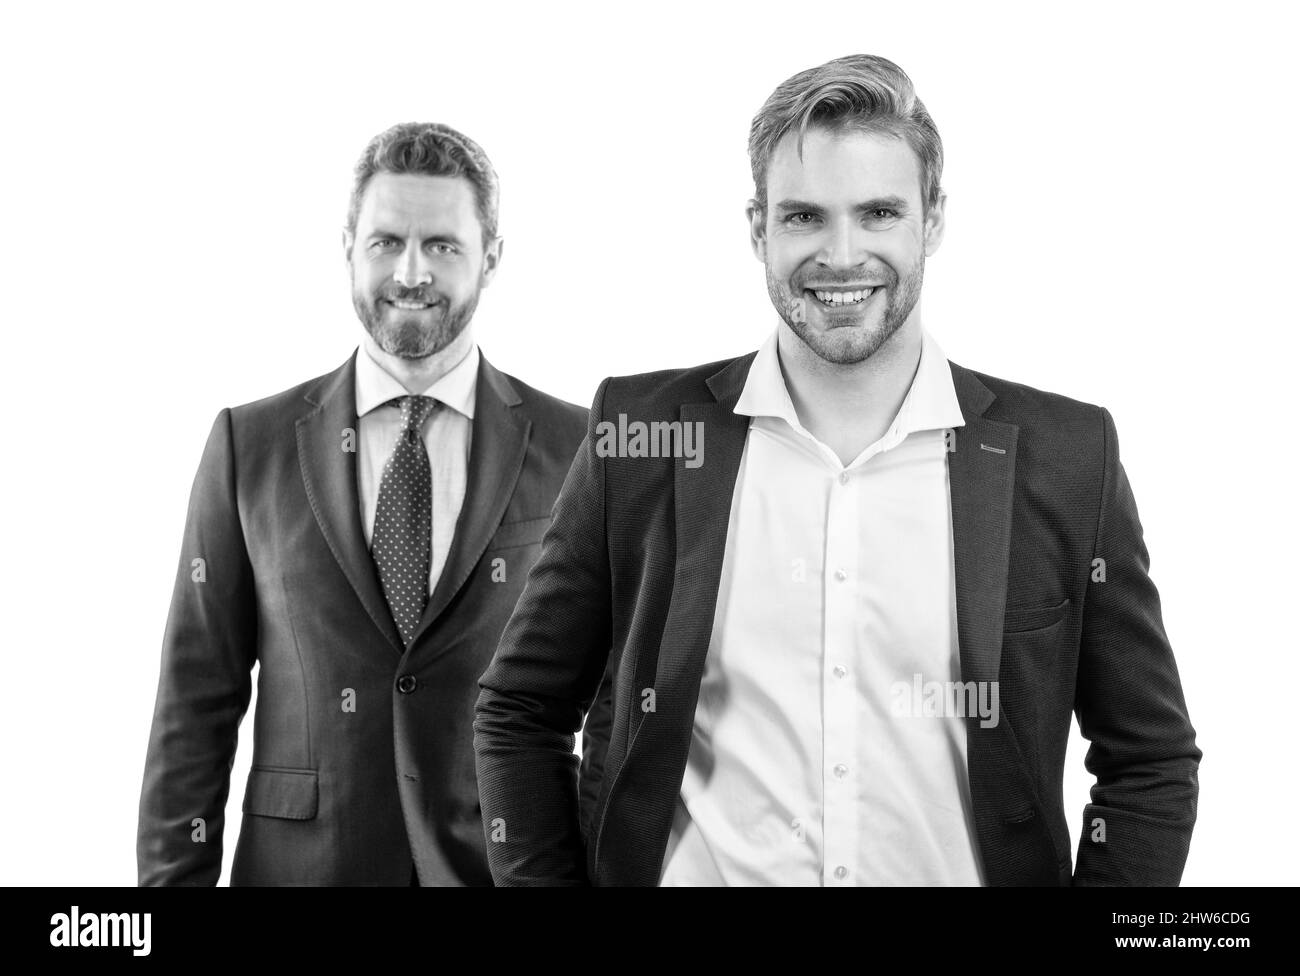 Echter Erfolg. Führung. Ambitionierte Kollegen-Experten. Zwei Männer in formalwear. Stockfoto